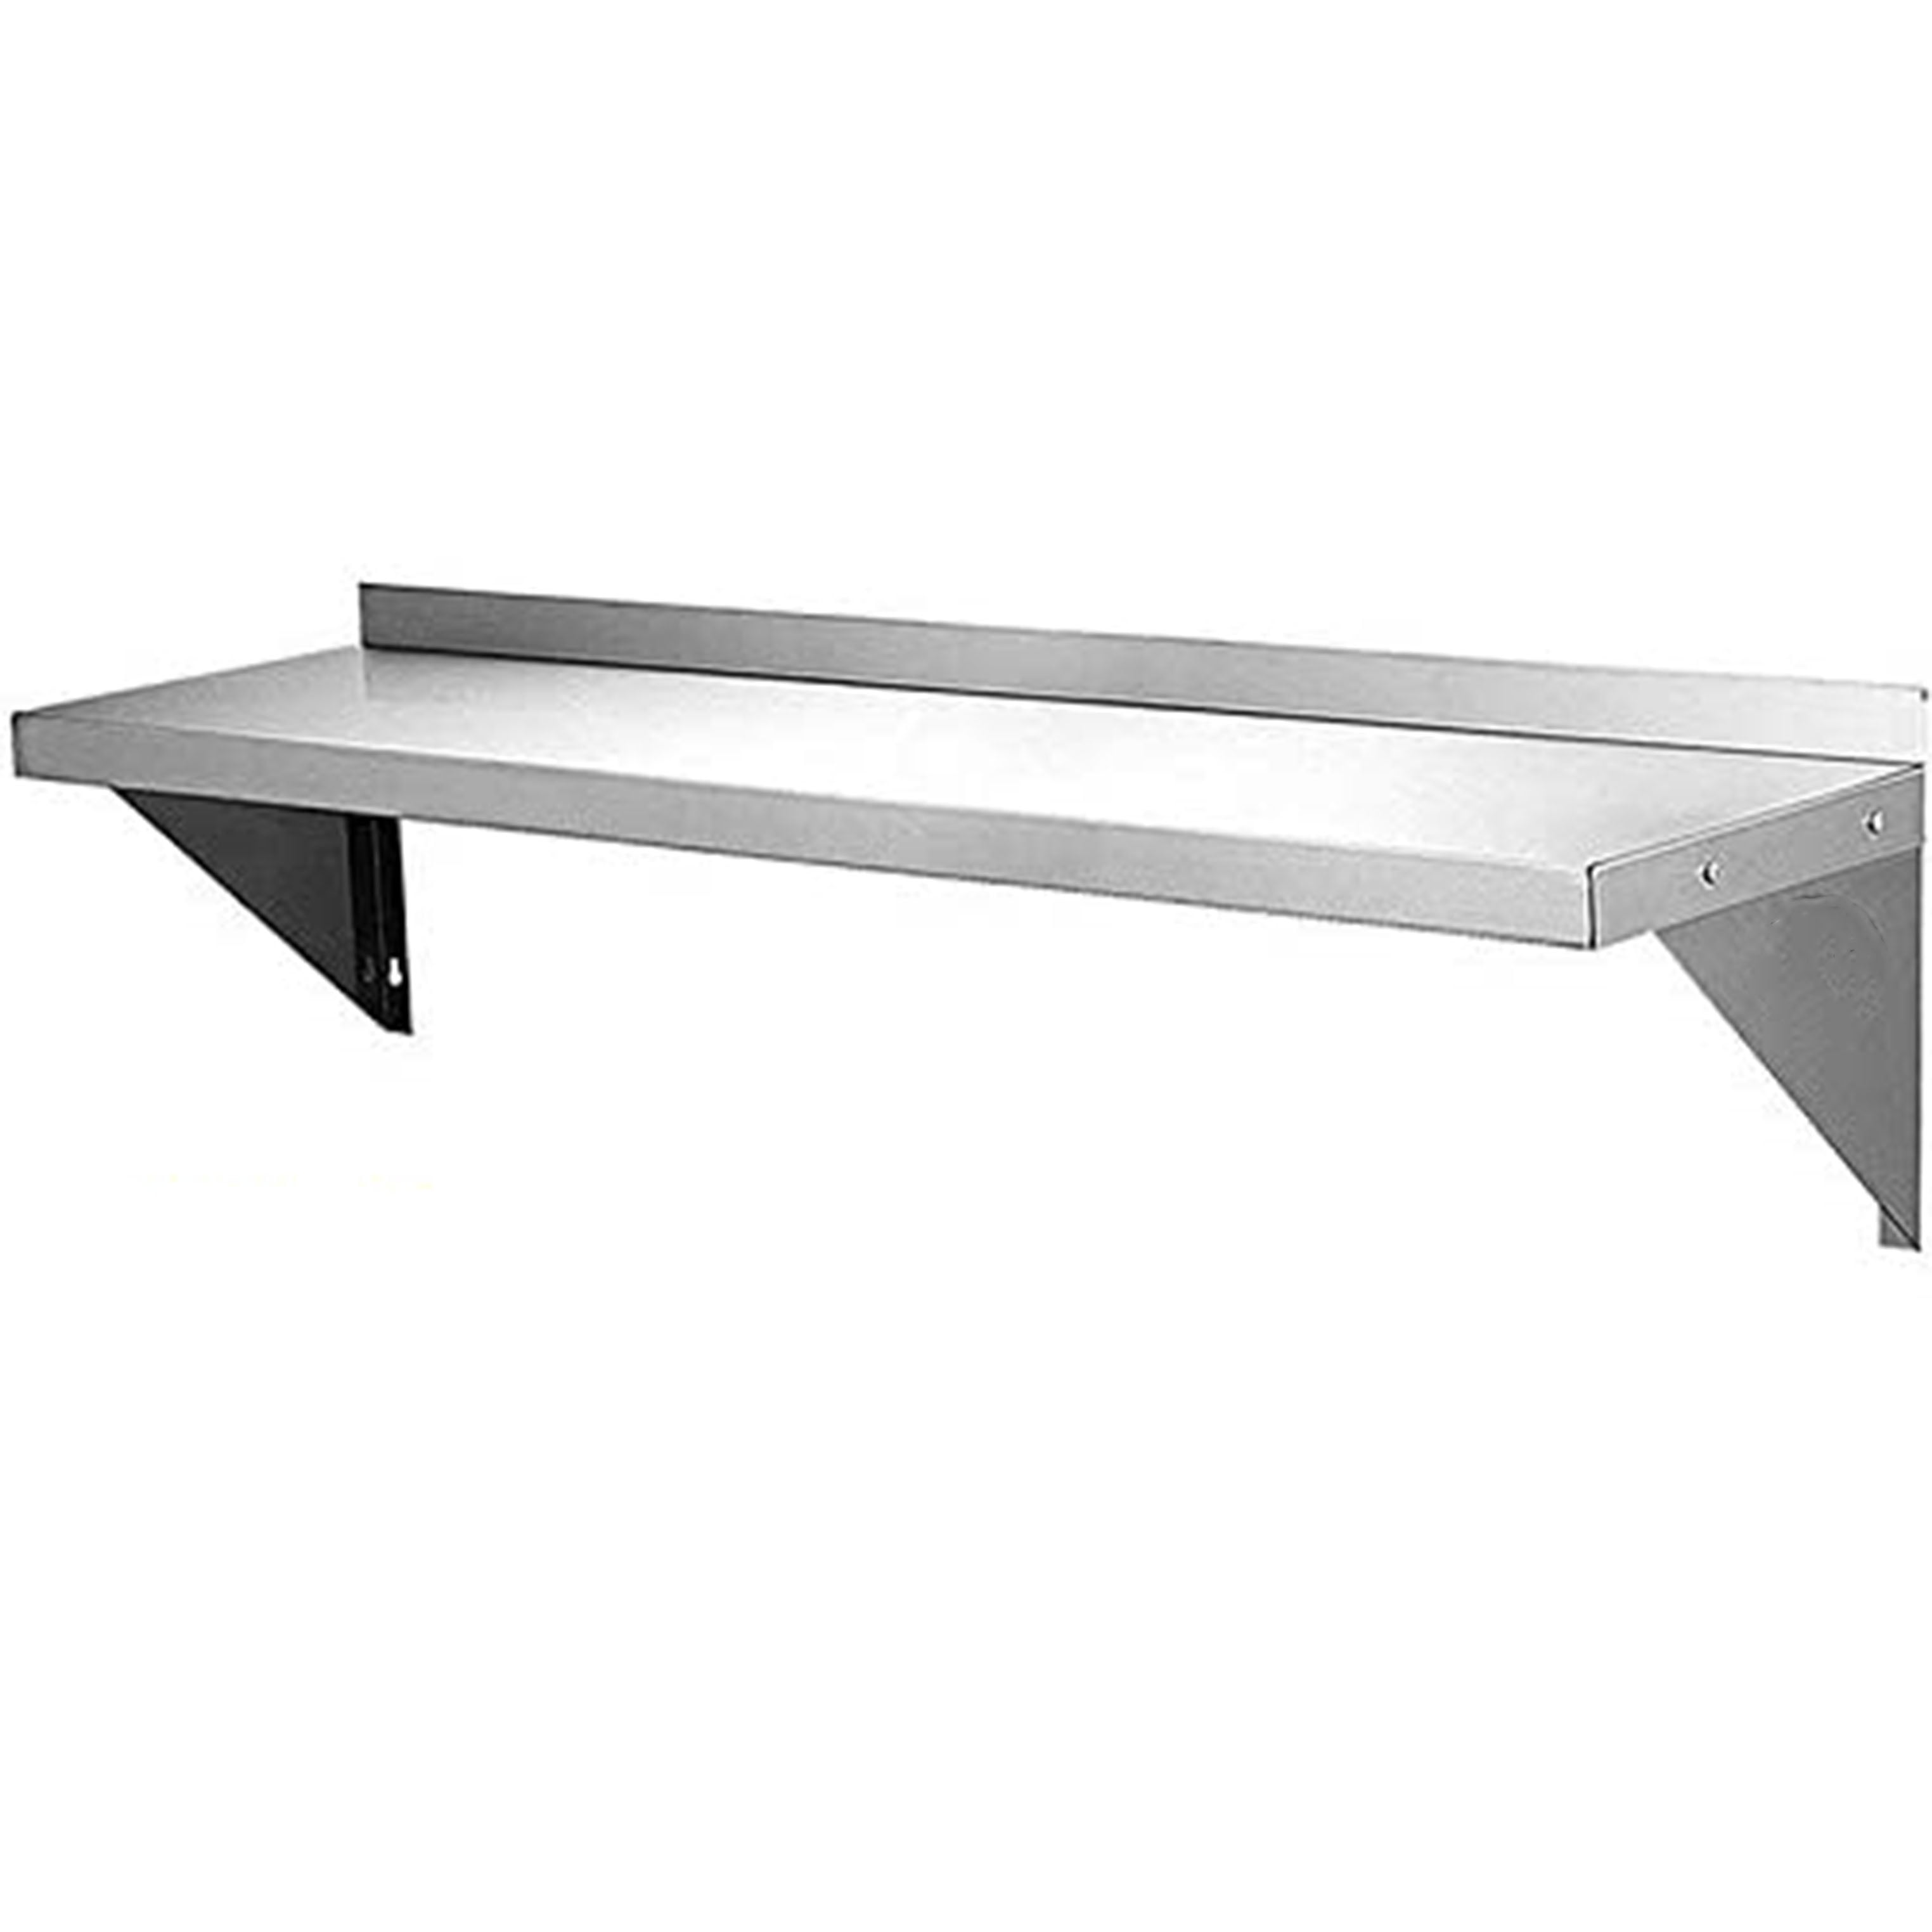 Shelf Riser,60 W x 10 D x 12 in H,Gray 5W672 